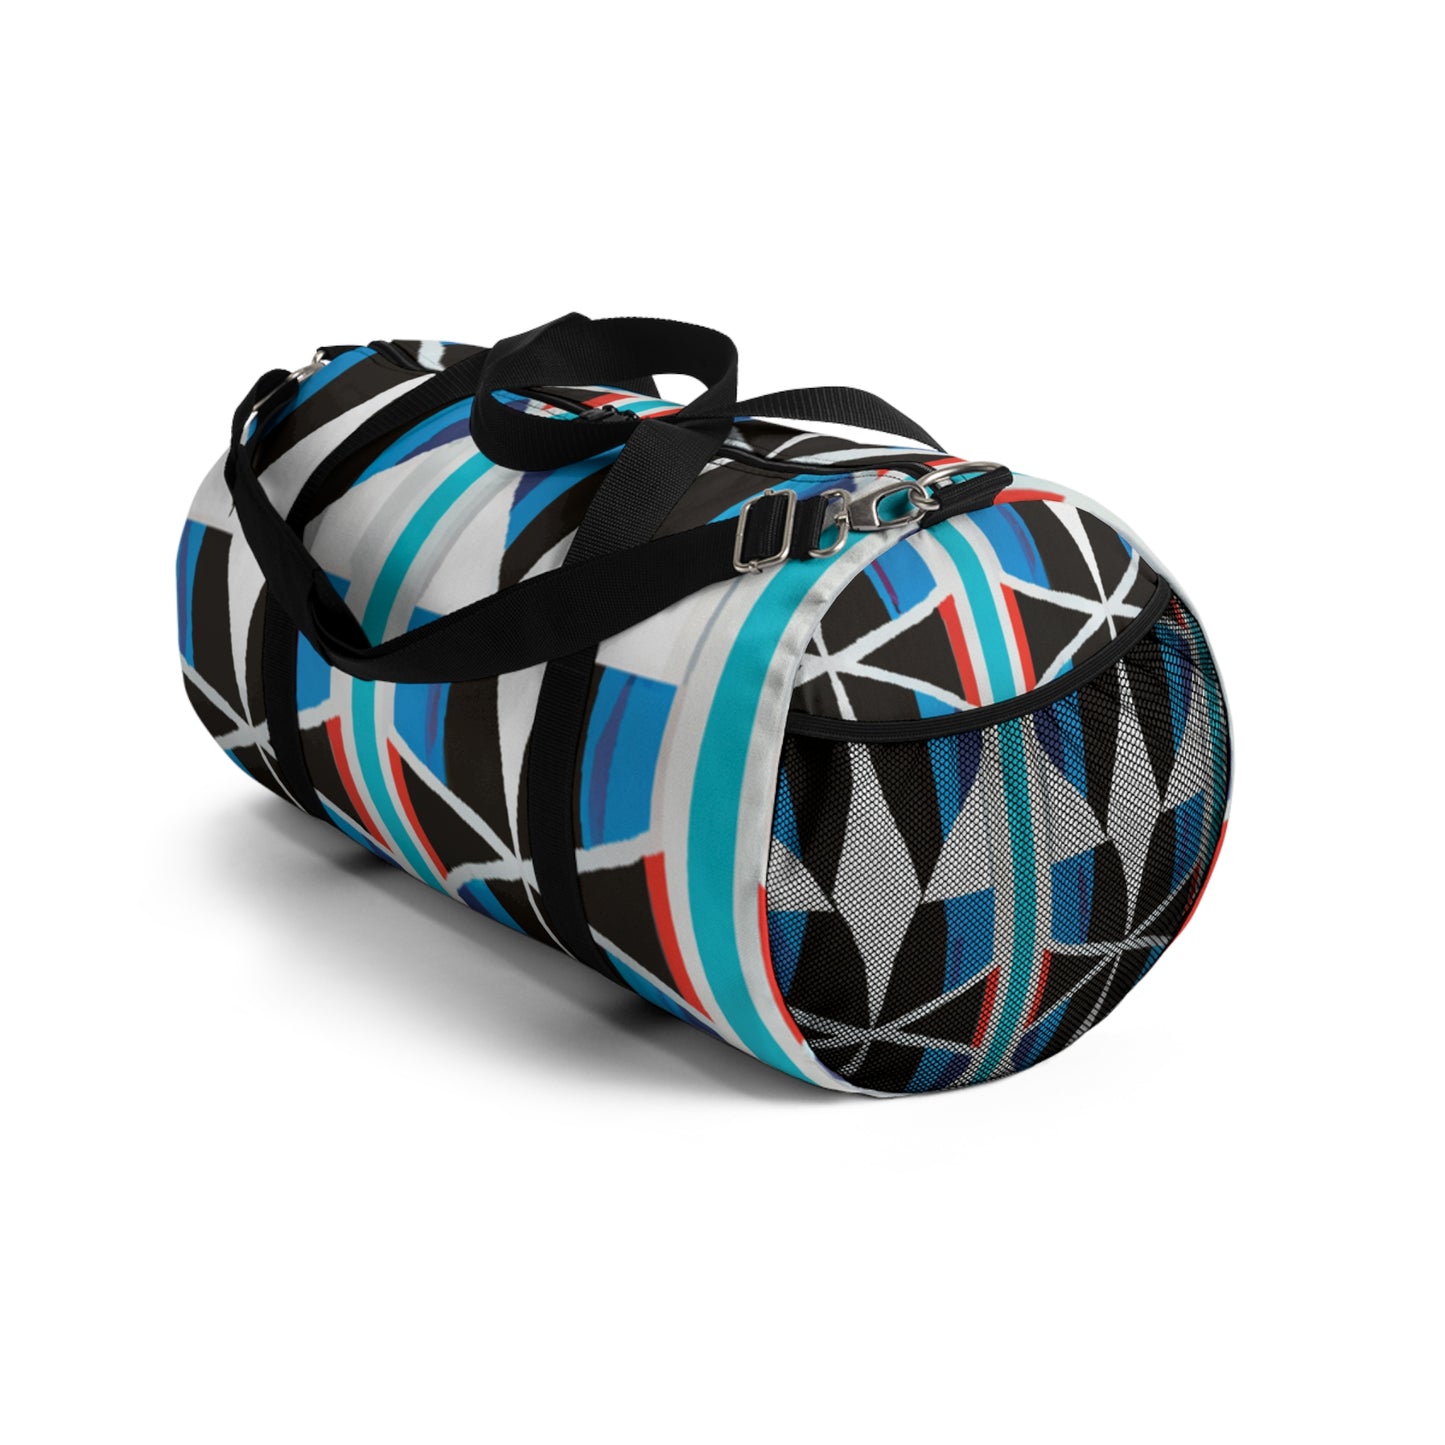 Frieda Schroeder - Geometric Pattern Duffel Travel Gym Luggage Bag